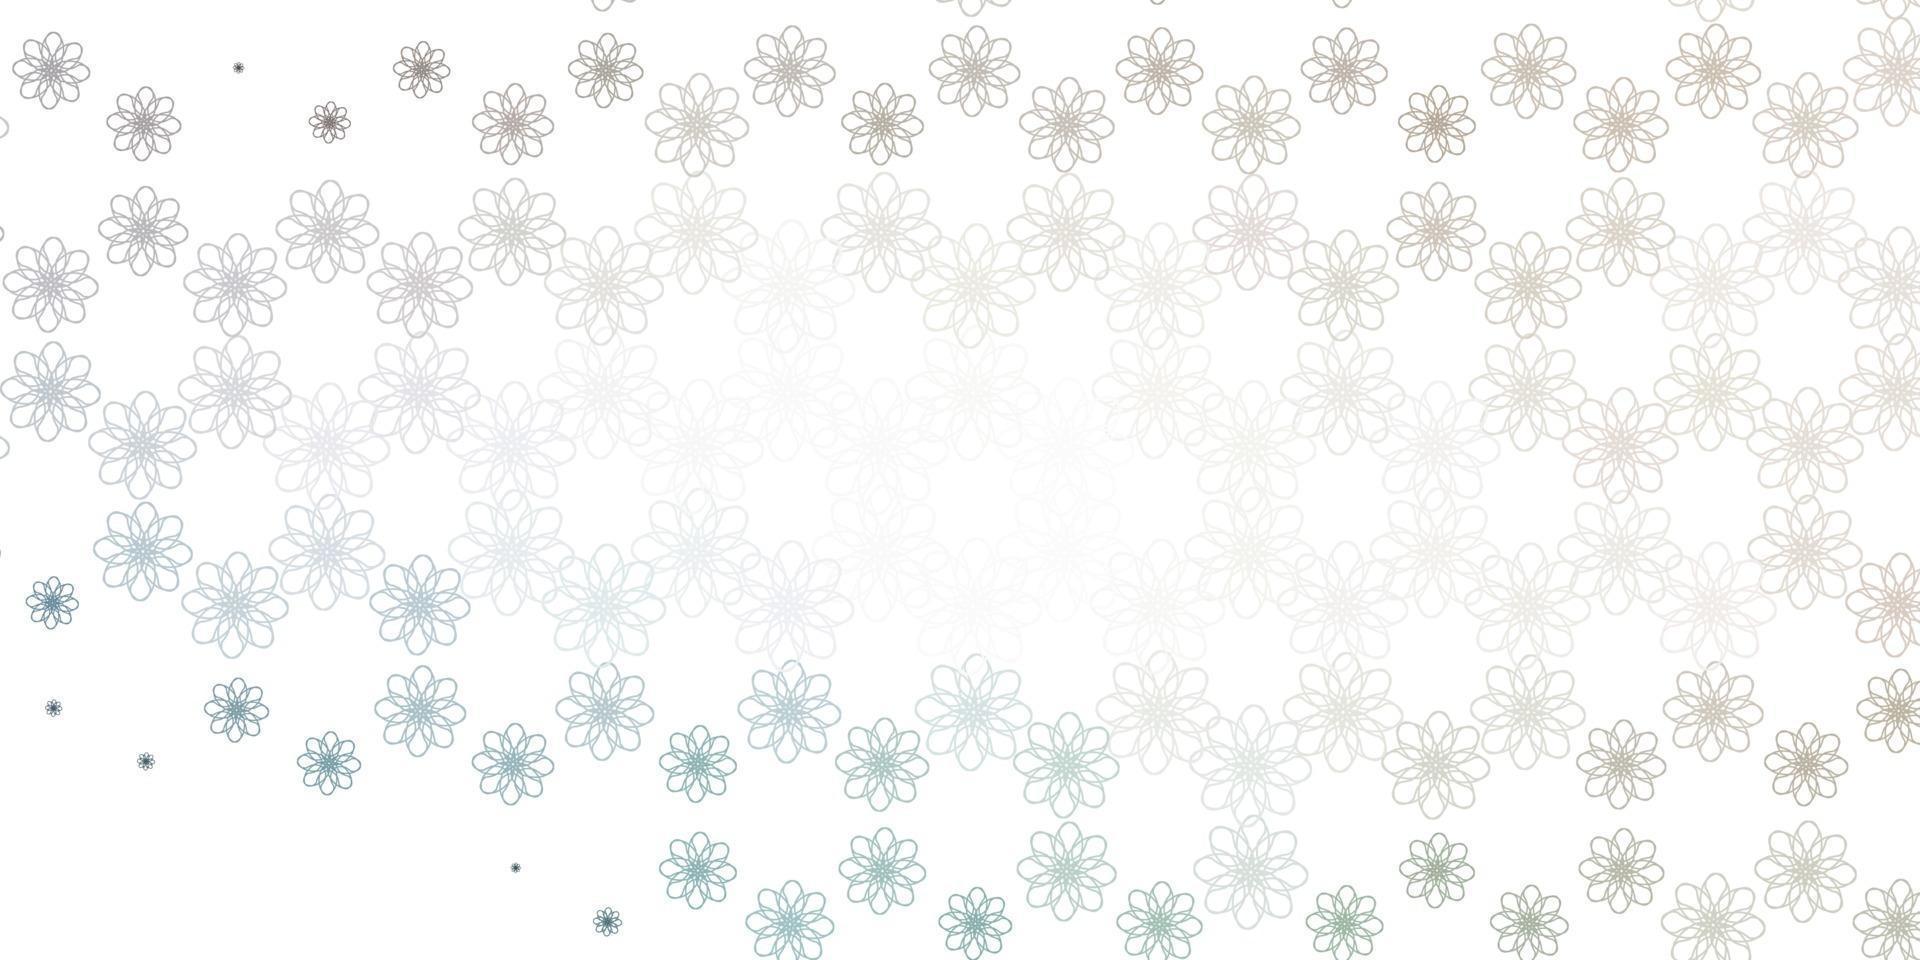 textura de vector gris claro con líneas torcidas.